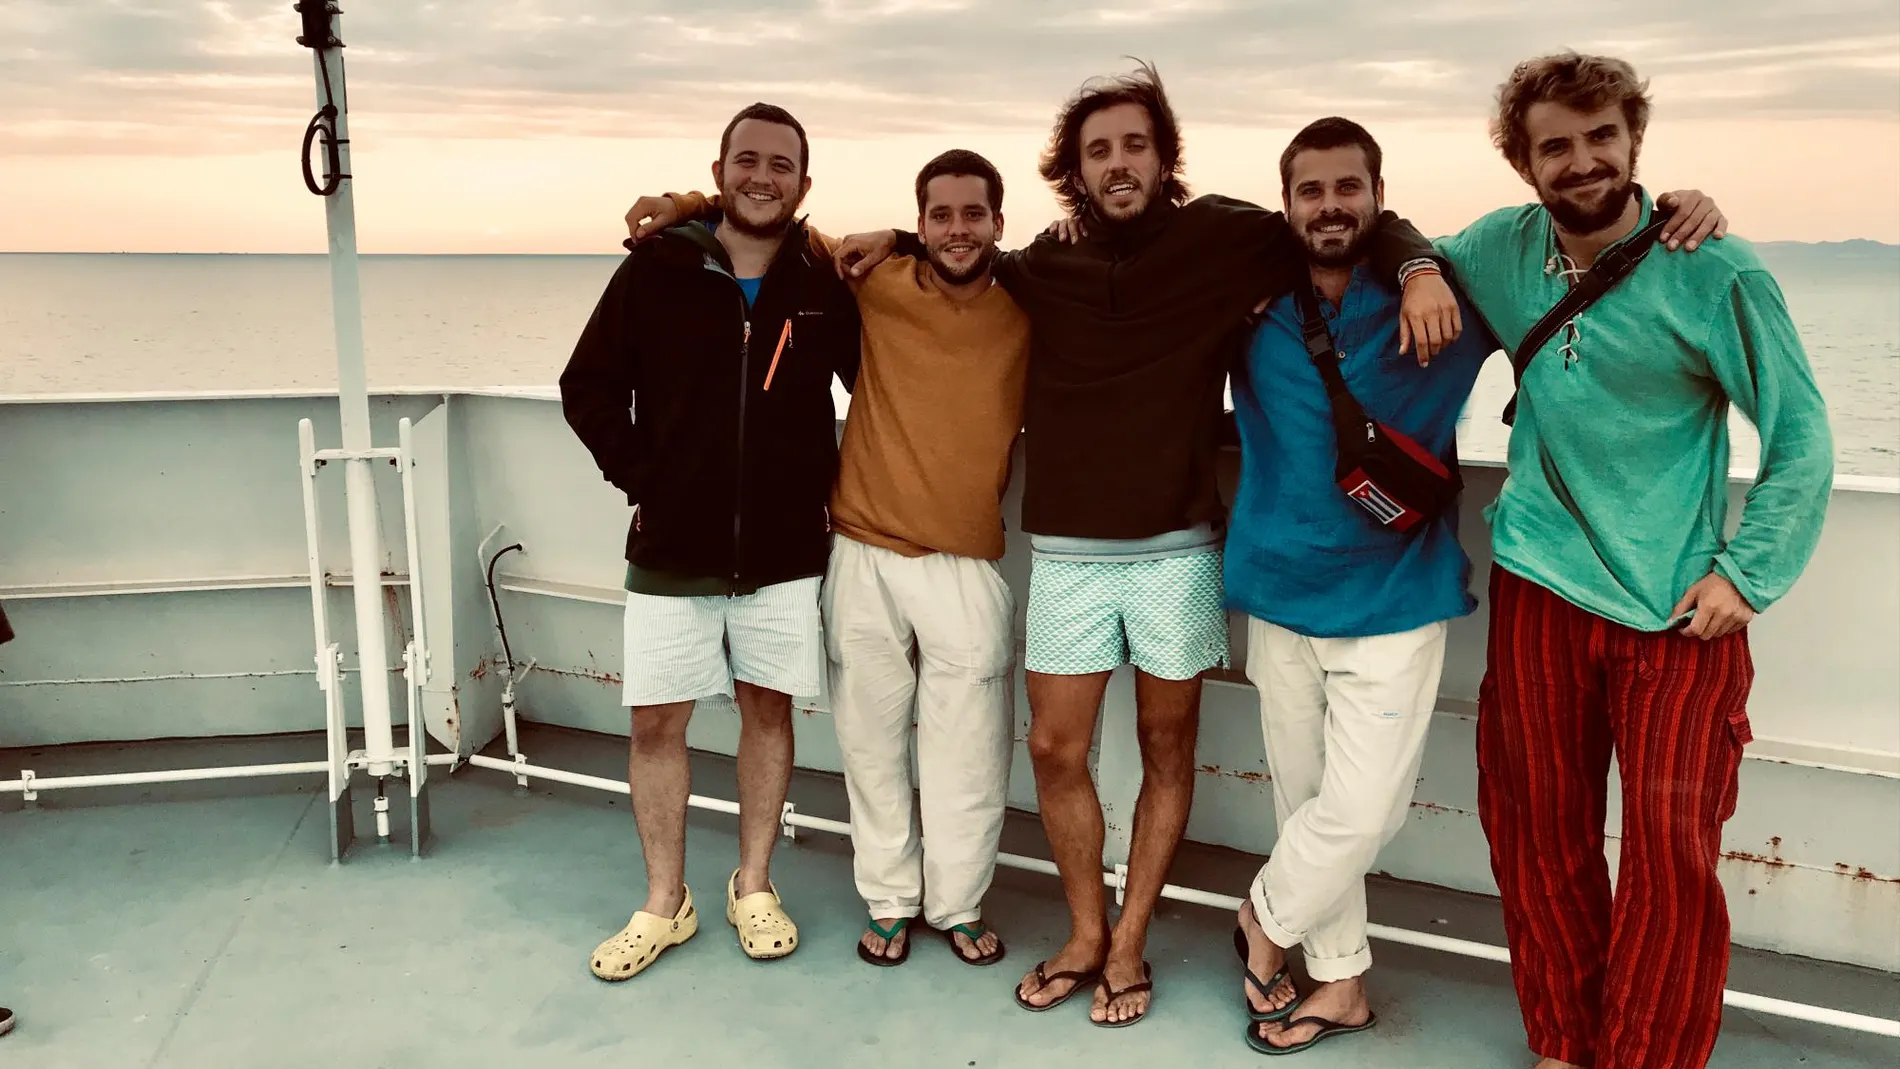 Los cinco amigos embarcados en este curioso viaje